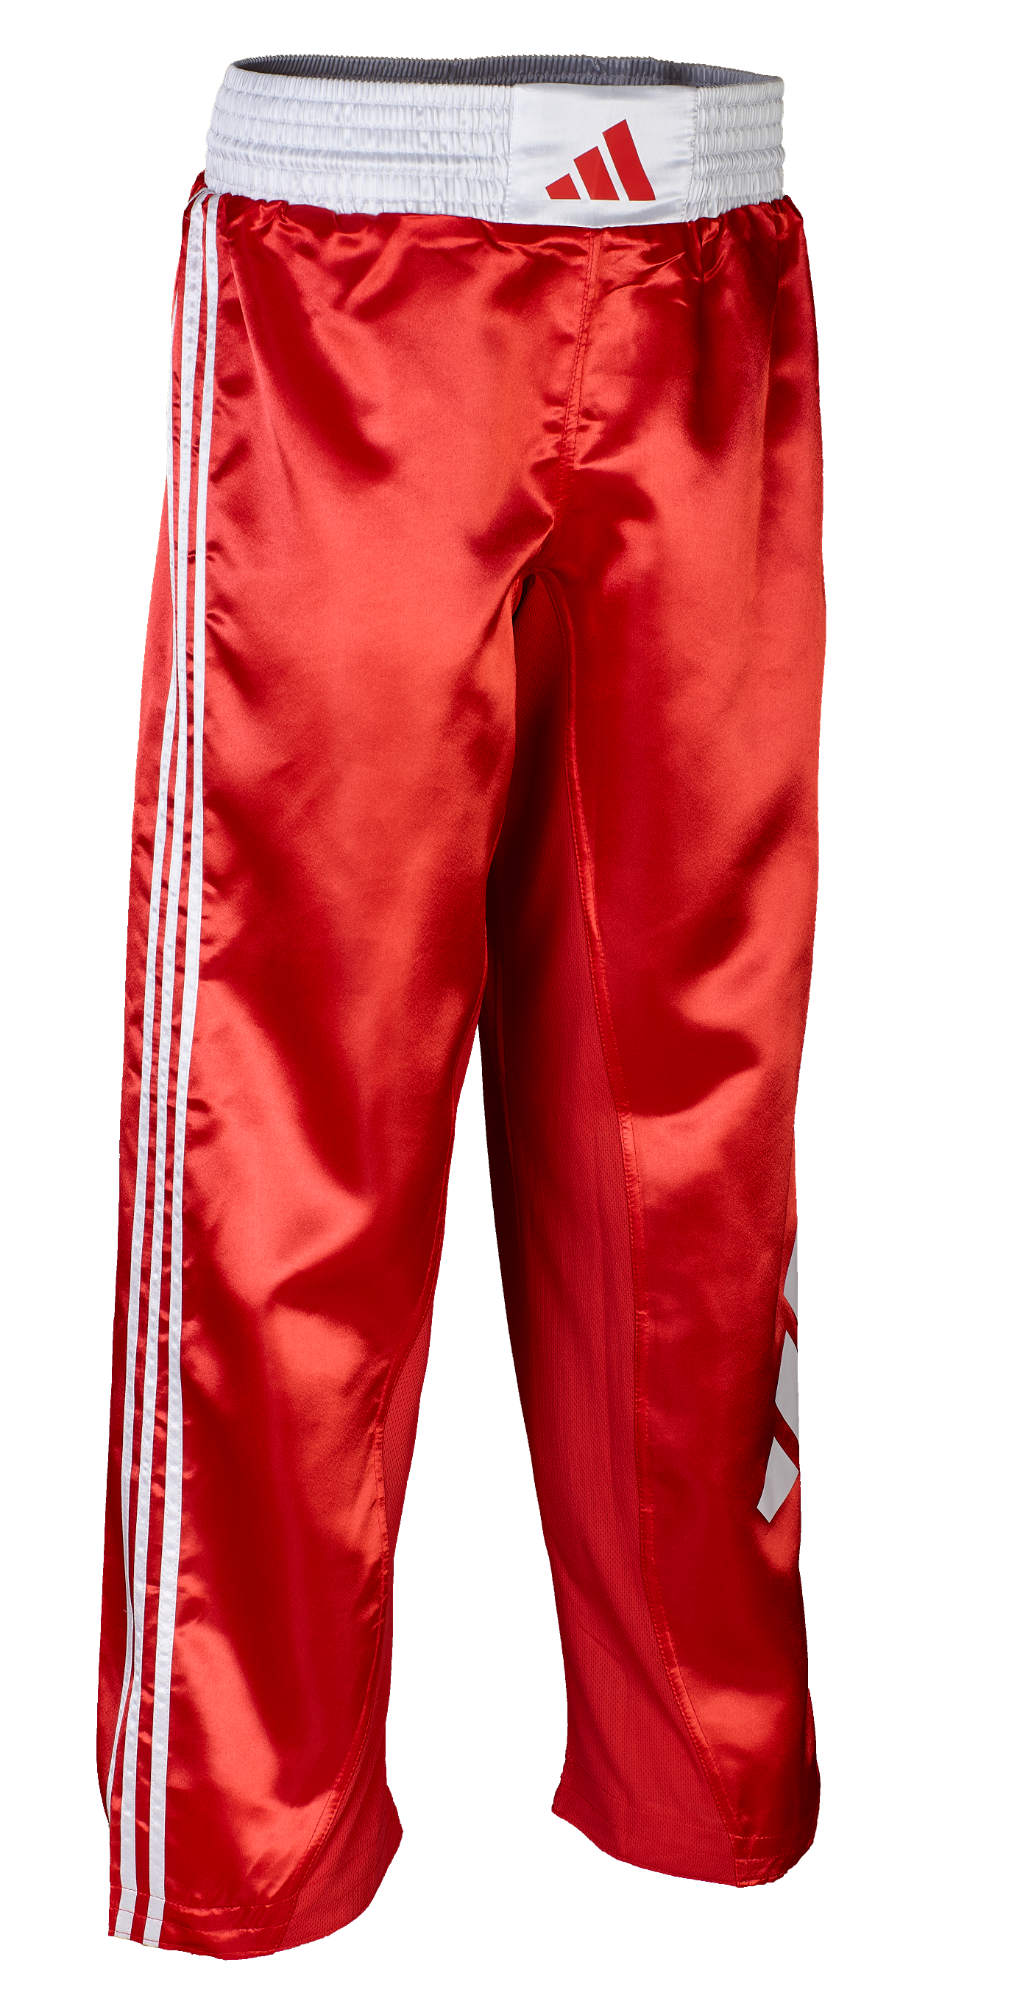 adidas Kickboxing pants red/white, adiKBUN100T